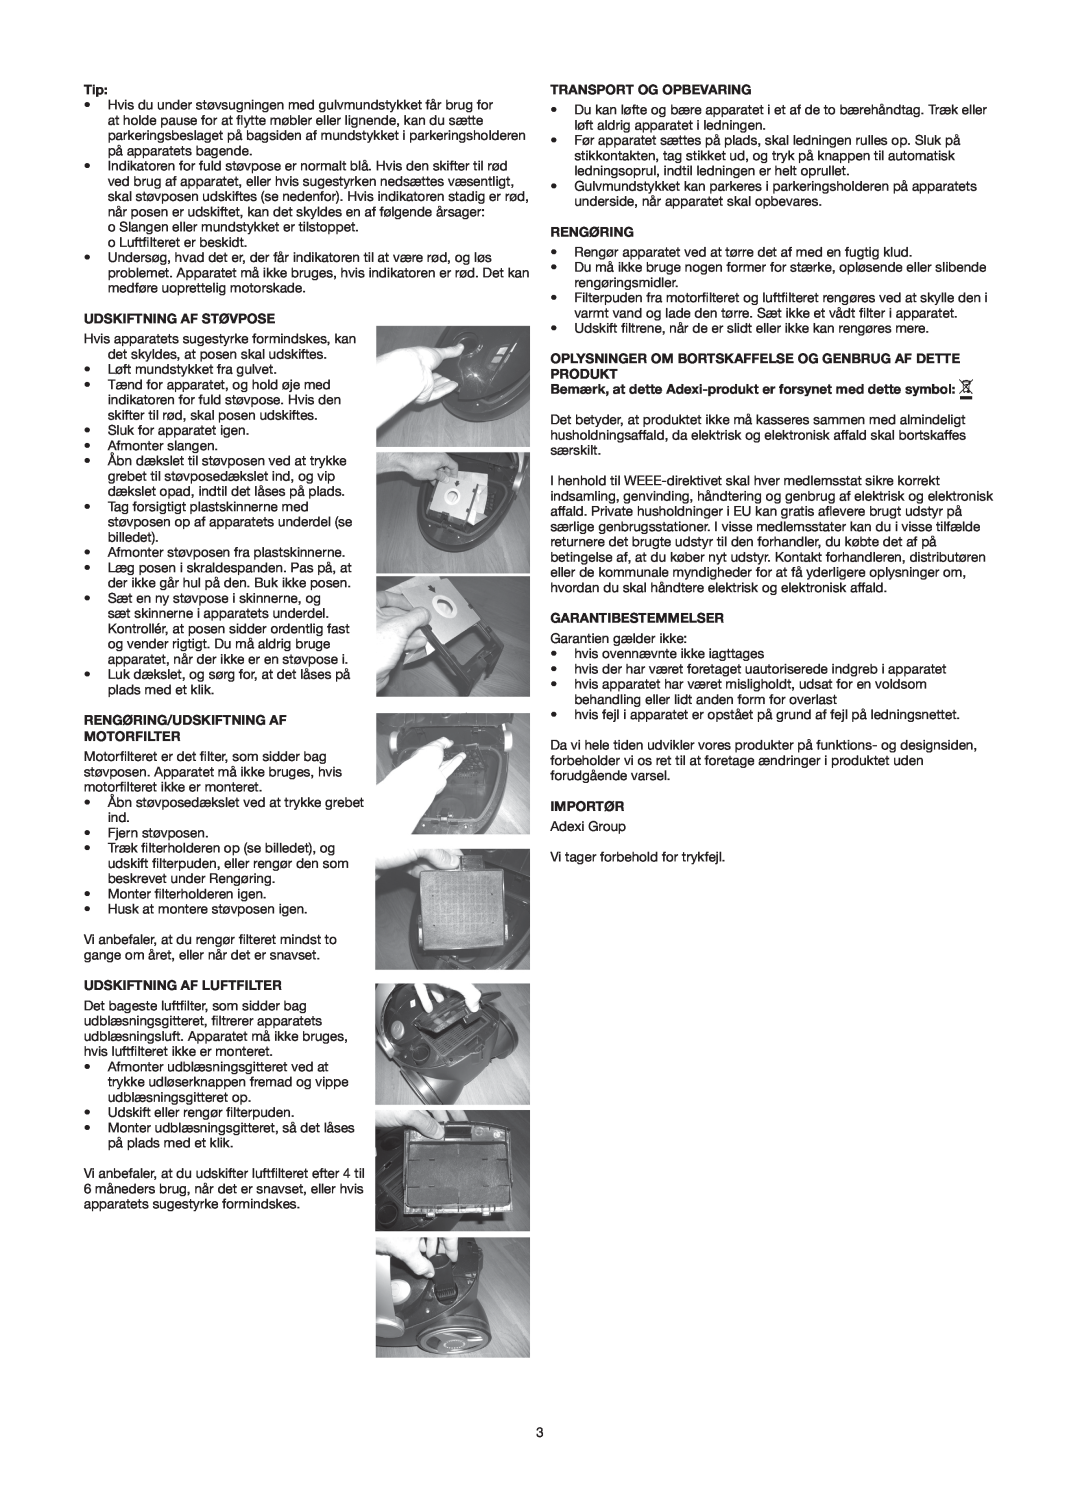 Melissa 640-121 manual Udskiftning Af Støvpose, Rengøring/Udskiftning Af Motorfilter, Udskiftning Af Luftfilter, Importør 